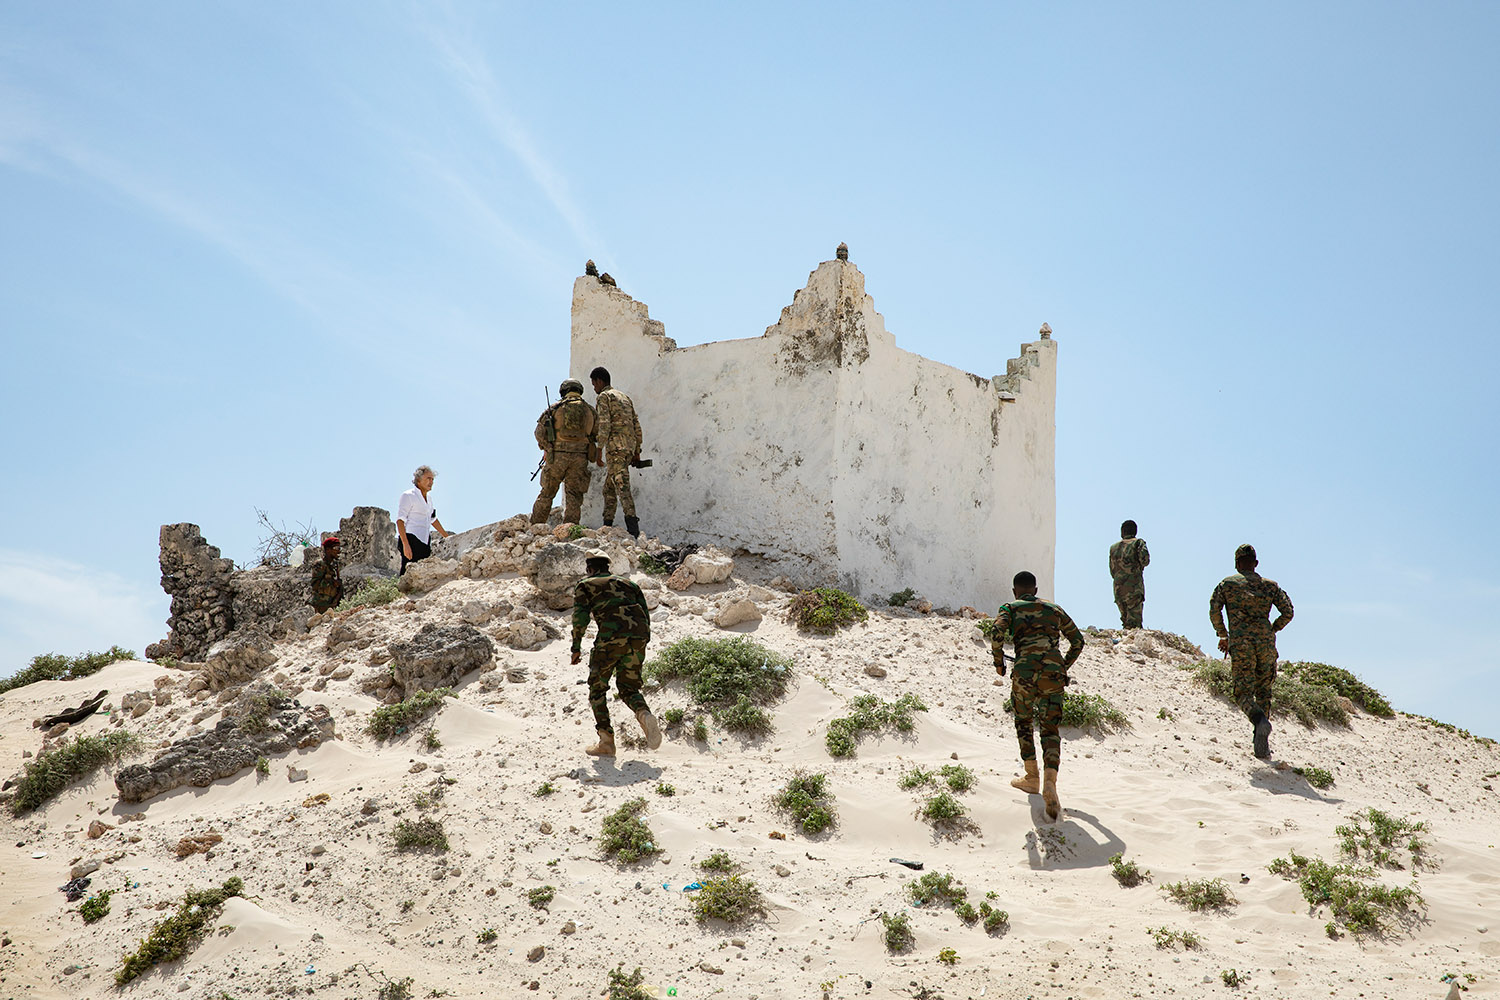 Des militaires montent en haut d'une colline de sable au sommet duquel se trouve une petite maison de pierre